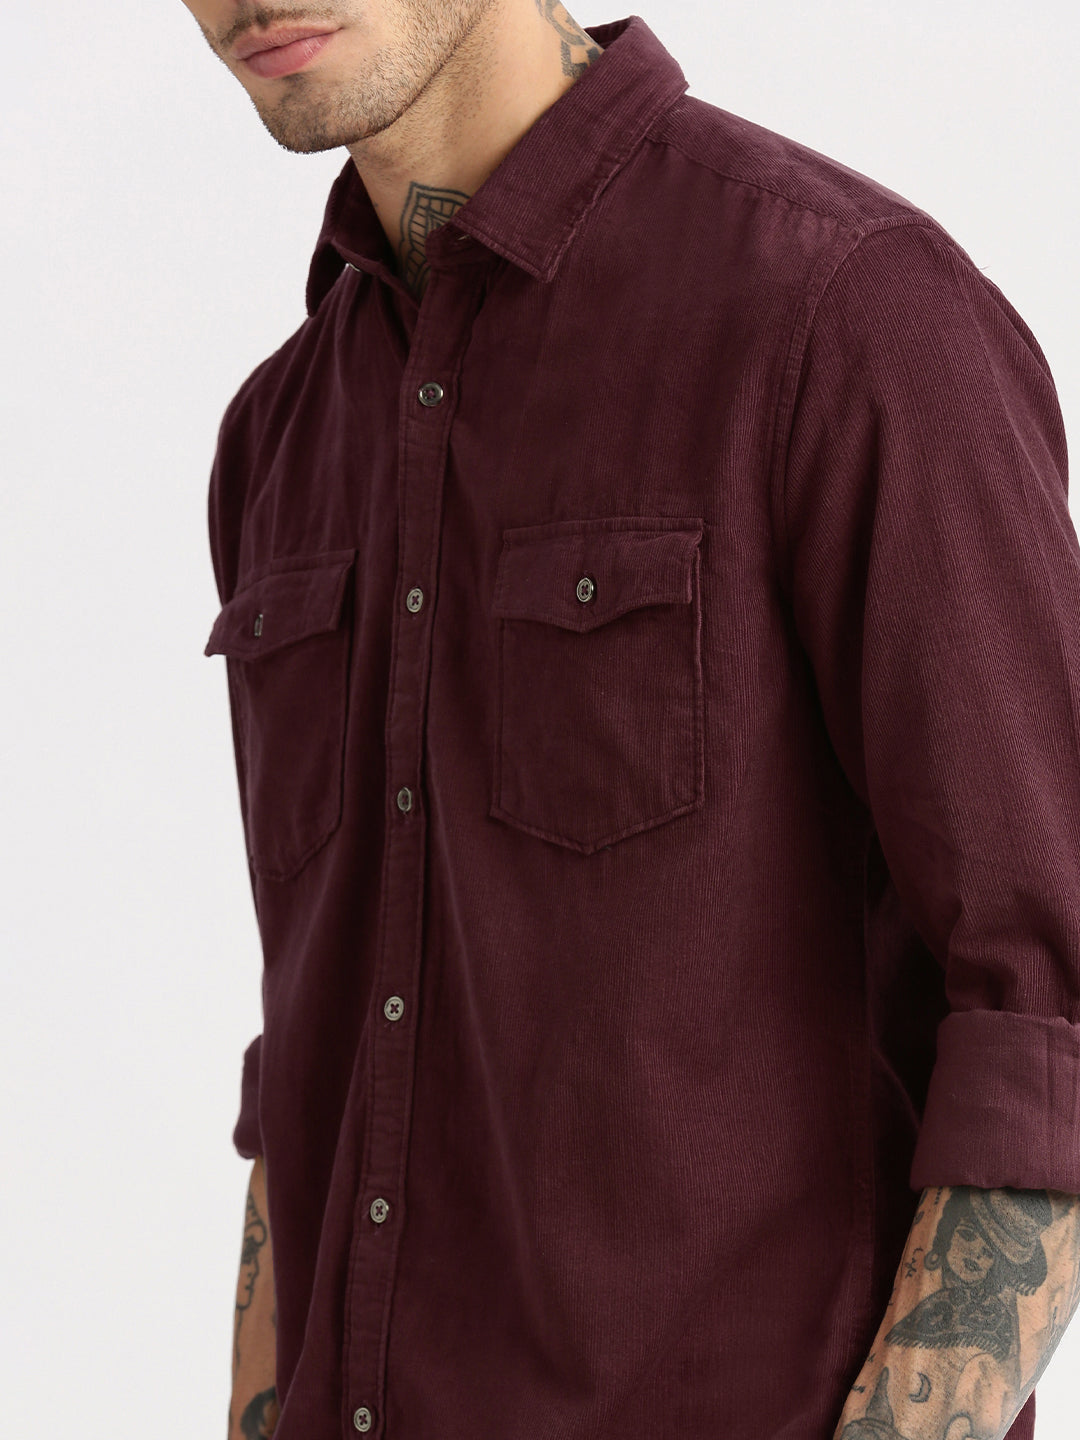 Men Spread Collar Corduroy Solid Maroon Casual Shirt